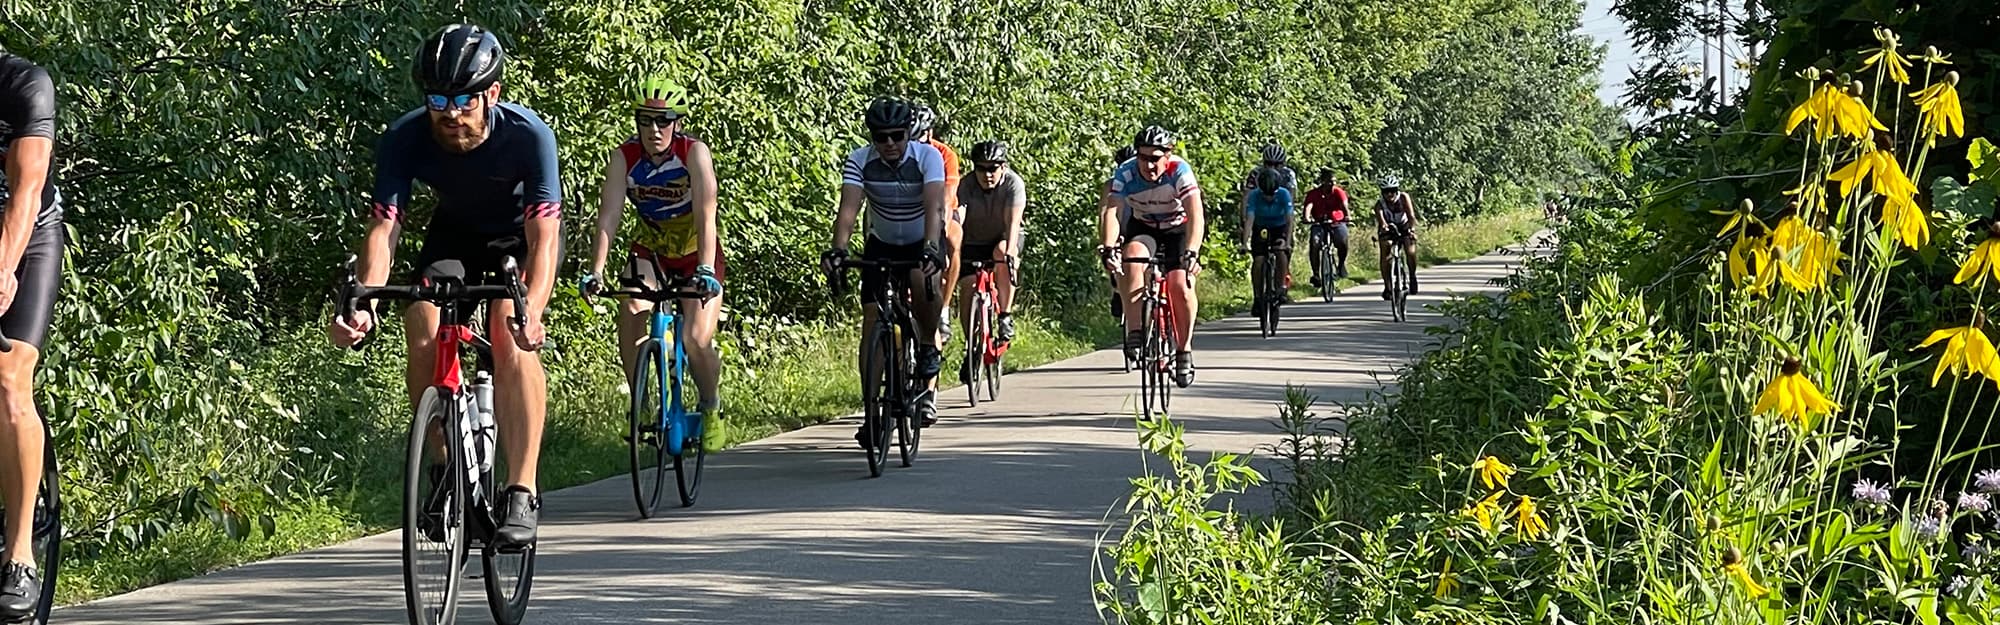 bike riders on a trail